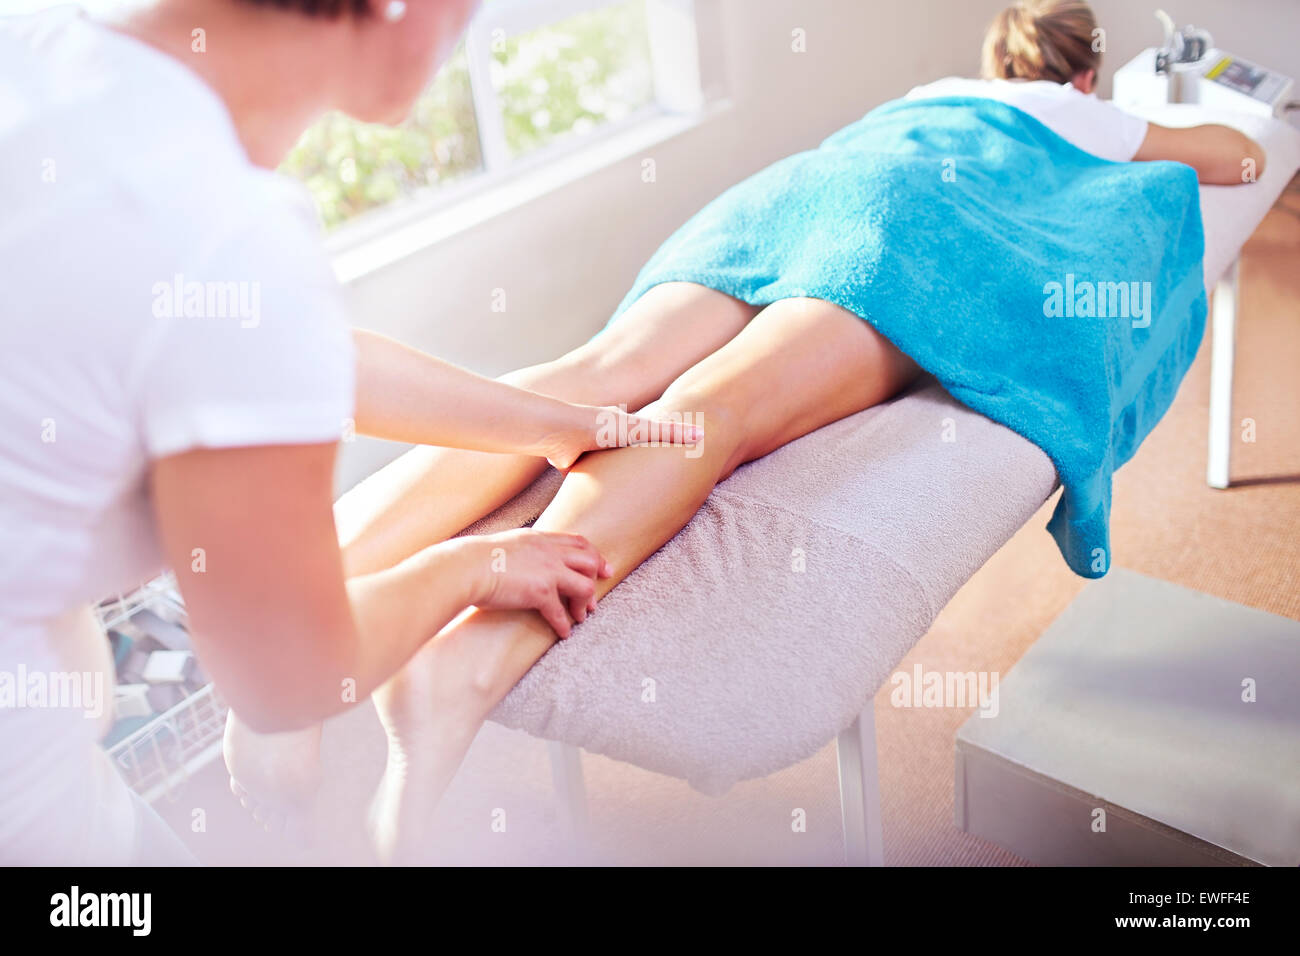 Masseuse massaging woman’s leg Stock Photo